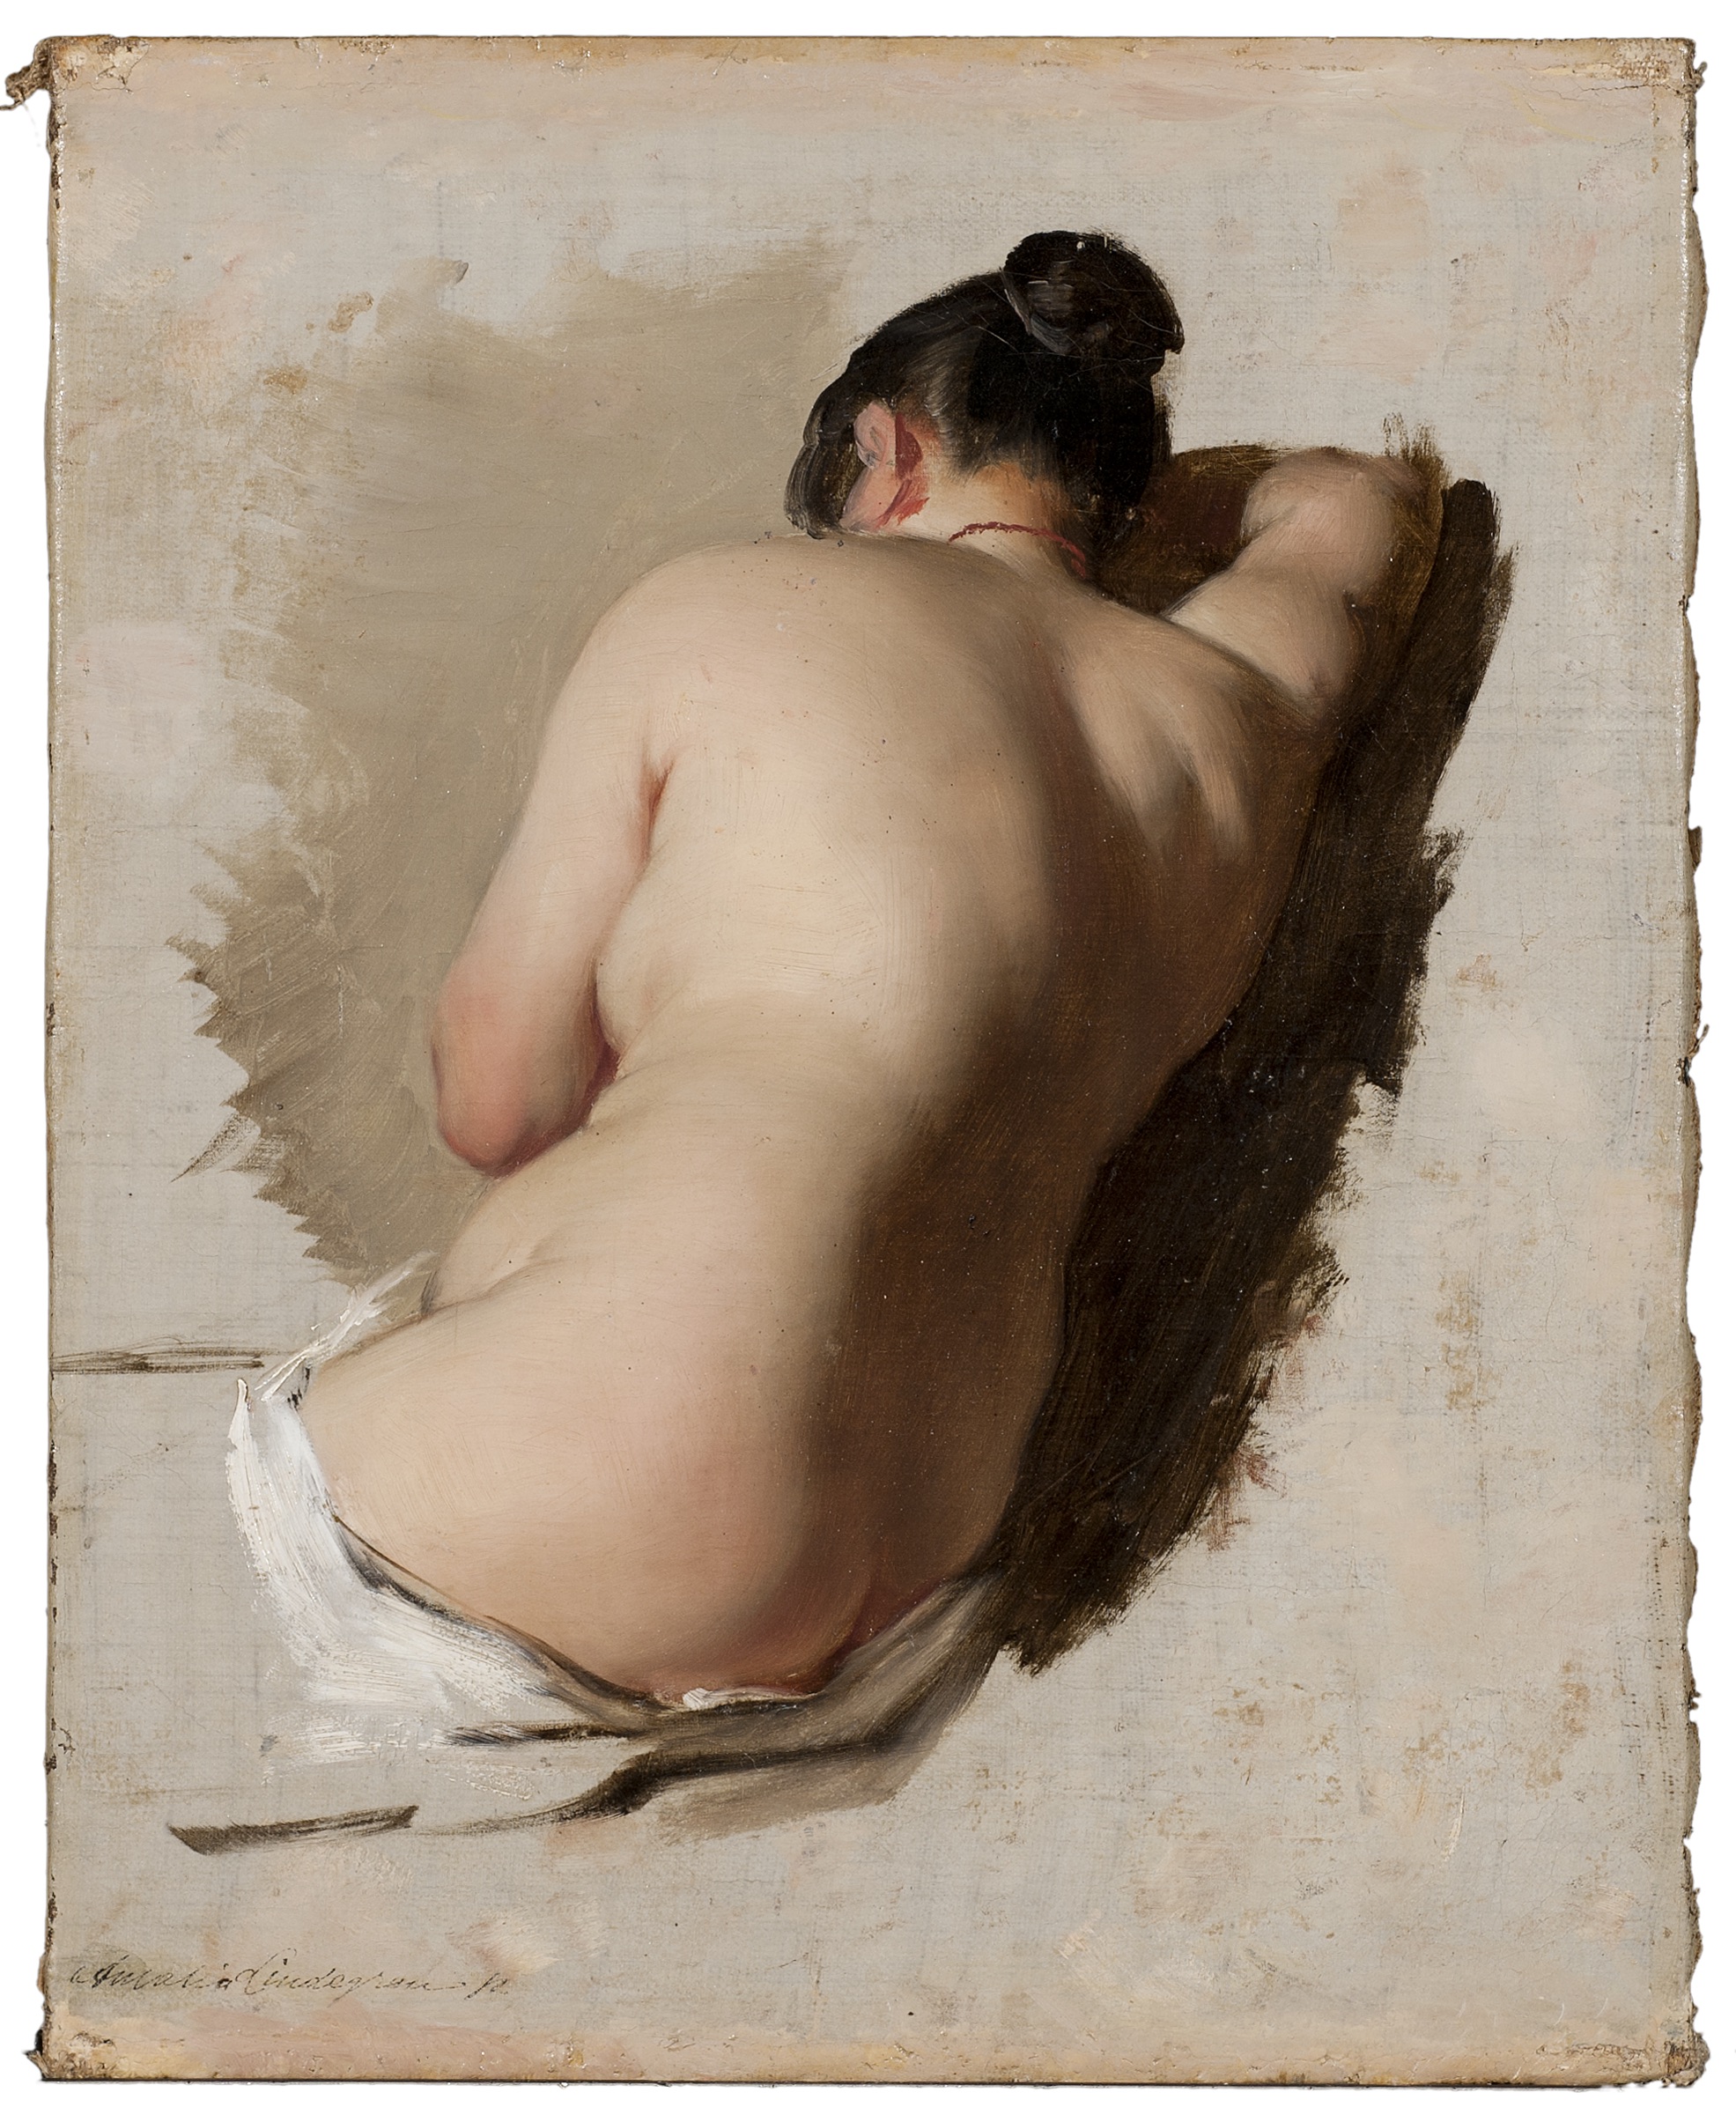 Estudio de desnudo by Amalia Lindegren - 1850 - 33,5 x 26,5 cm Museo Nacional de Estocolmo